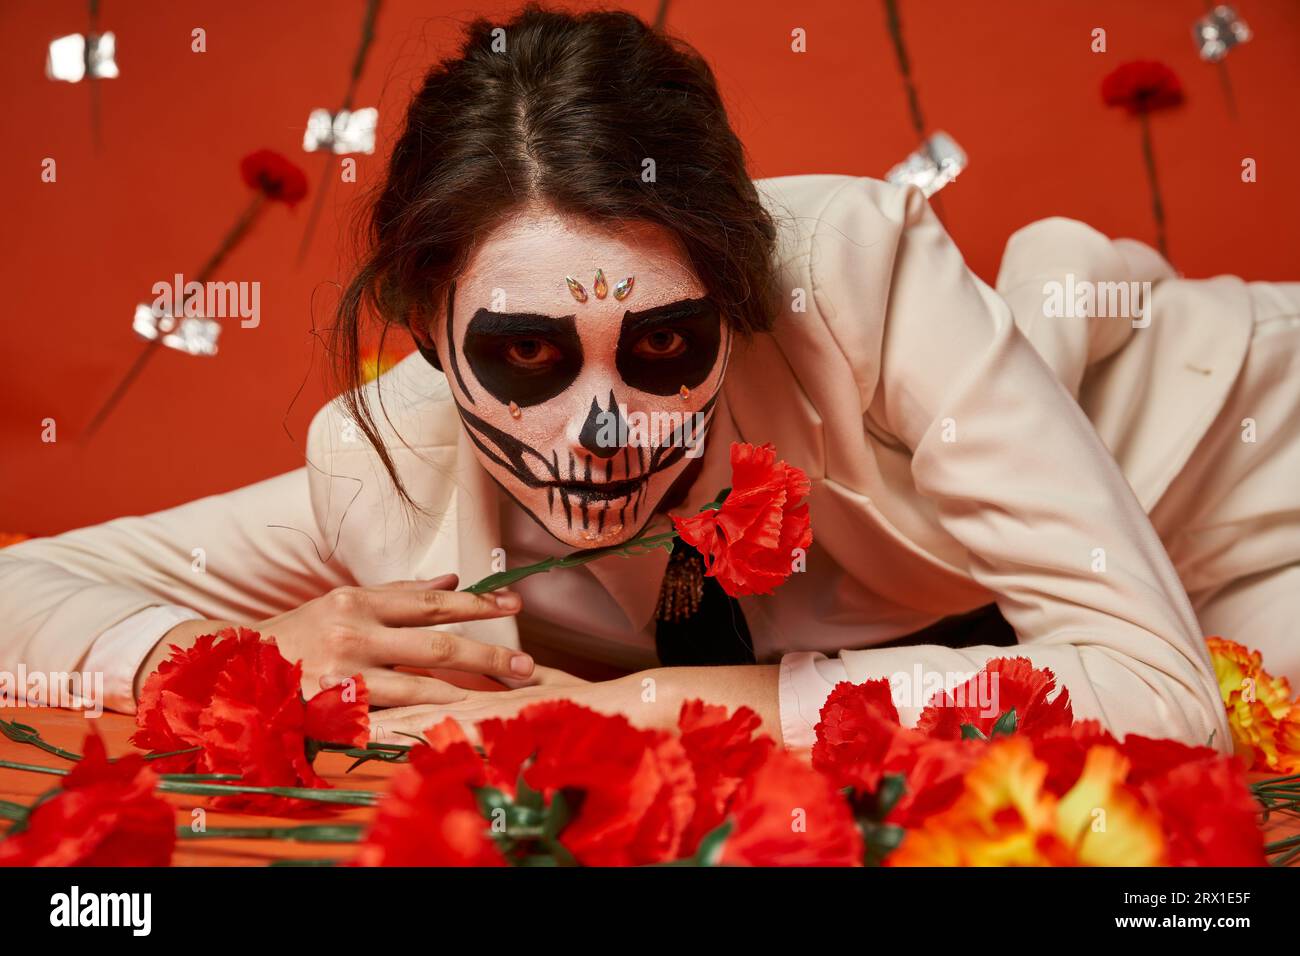 donna elegante con spaventoso trucco catrina sdraiata e guardando la macchina fotografica vicino ai fiori su sfondo rosso Foto Stock